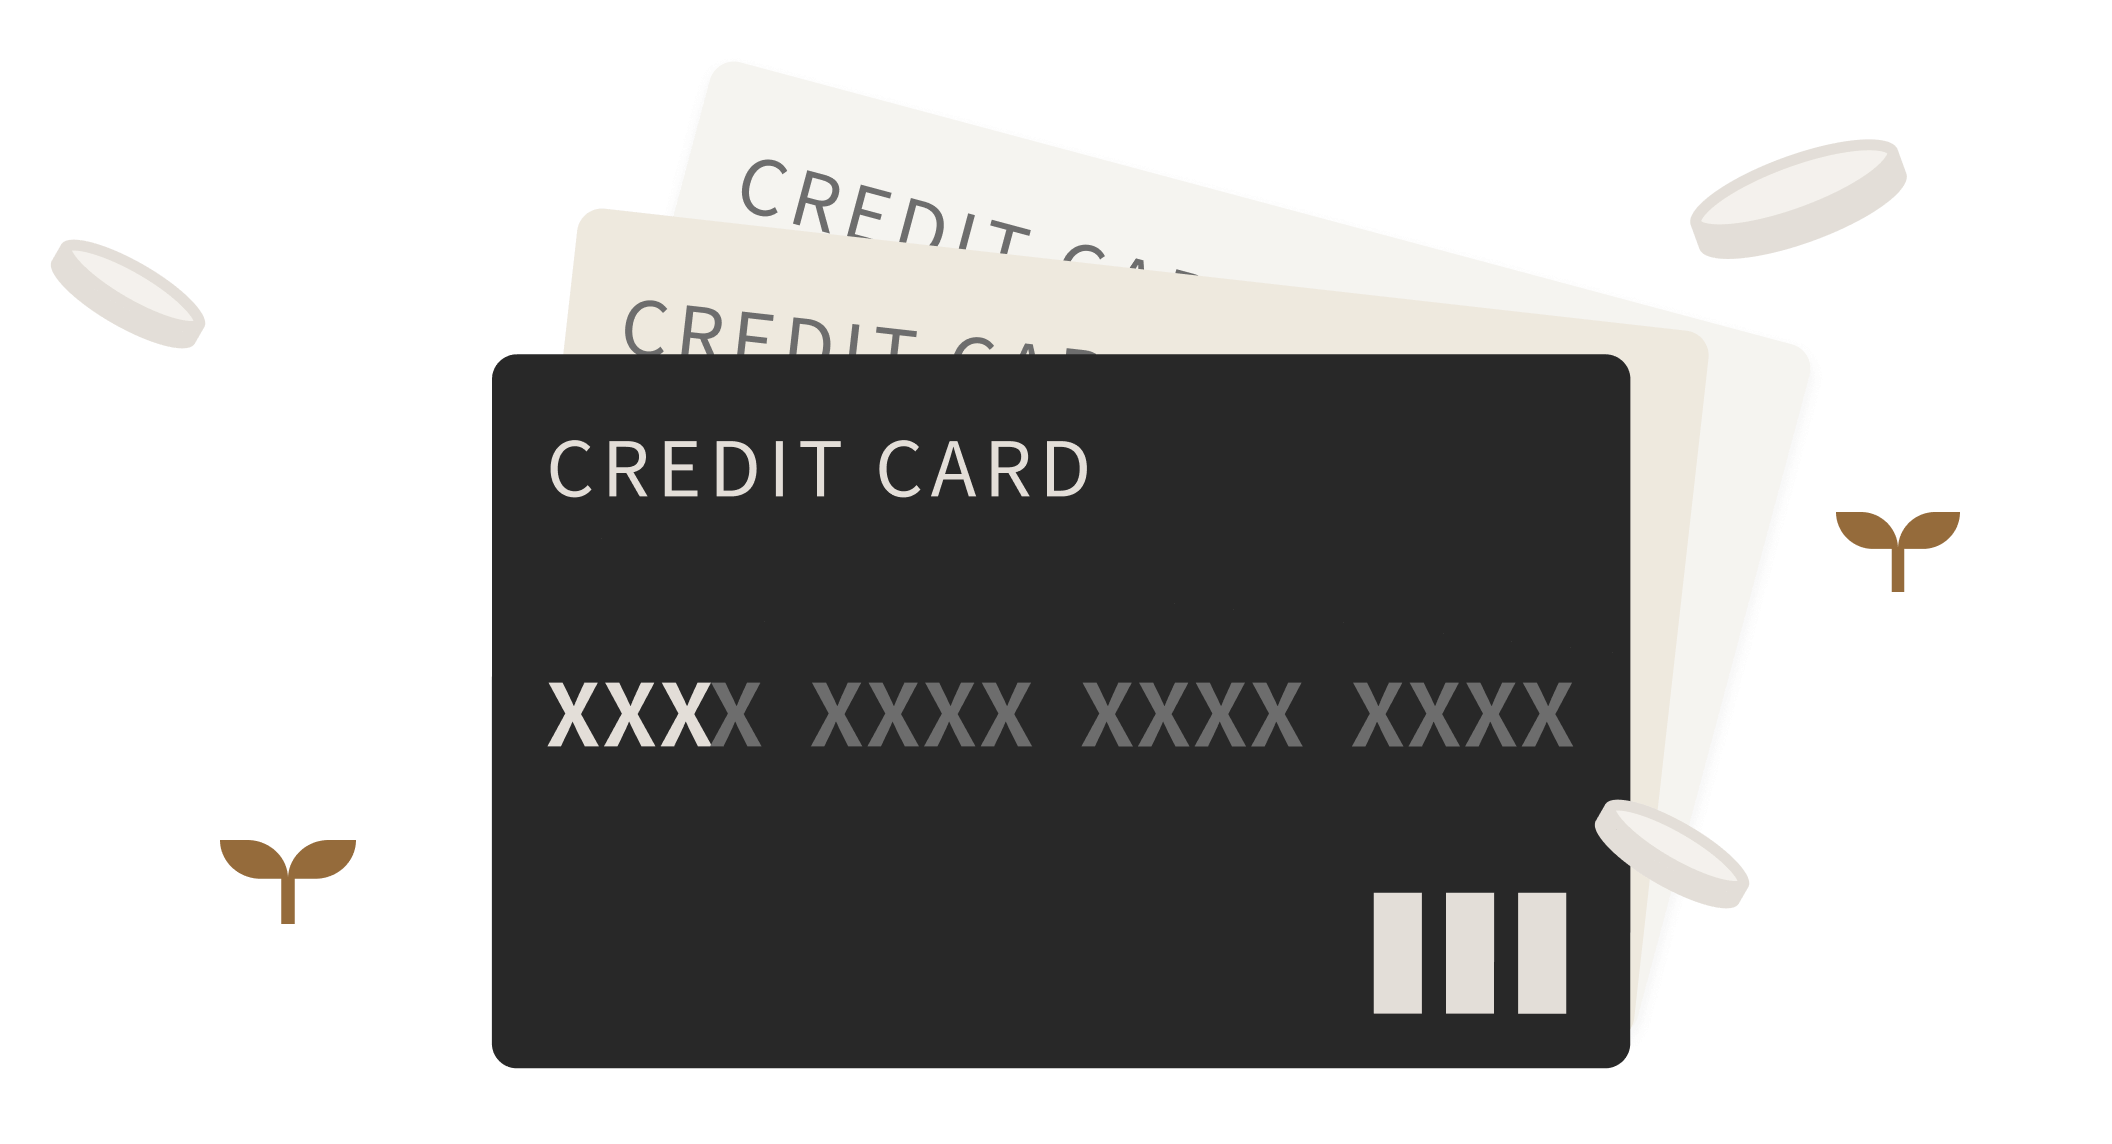 クレジットカードの登録について